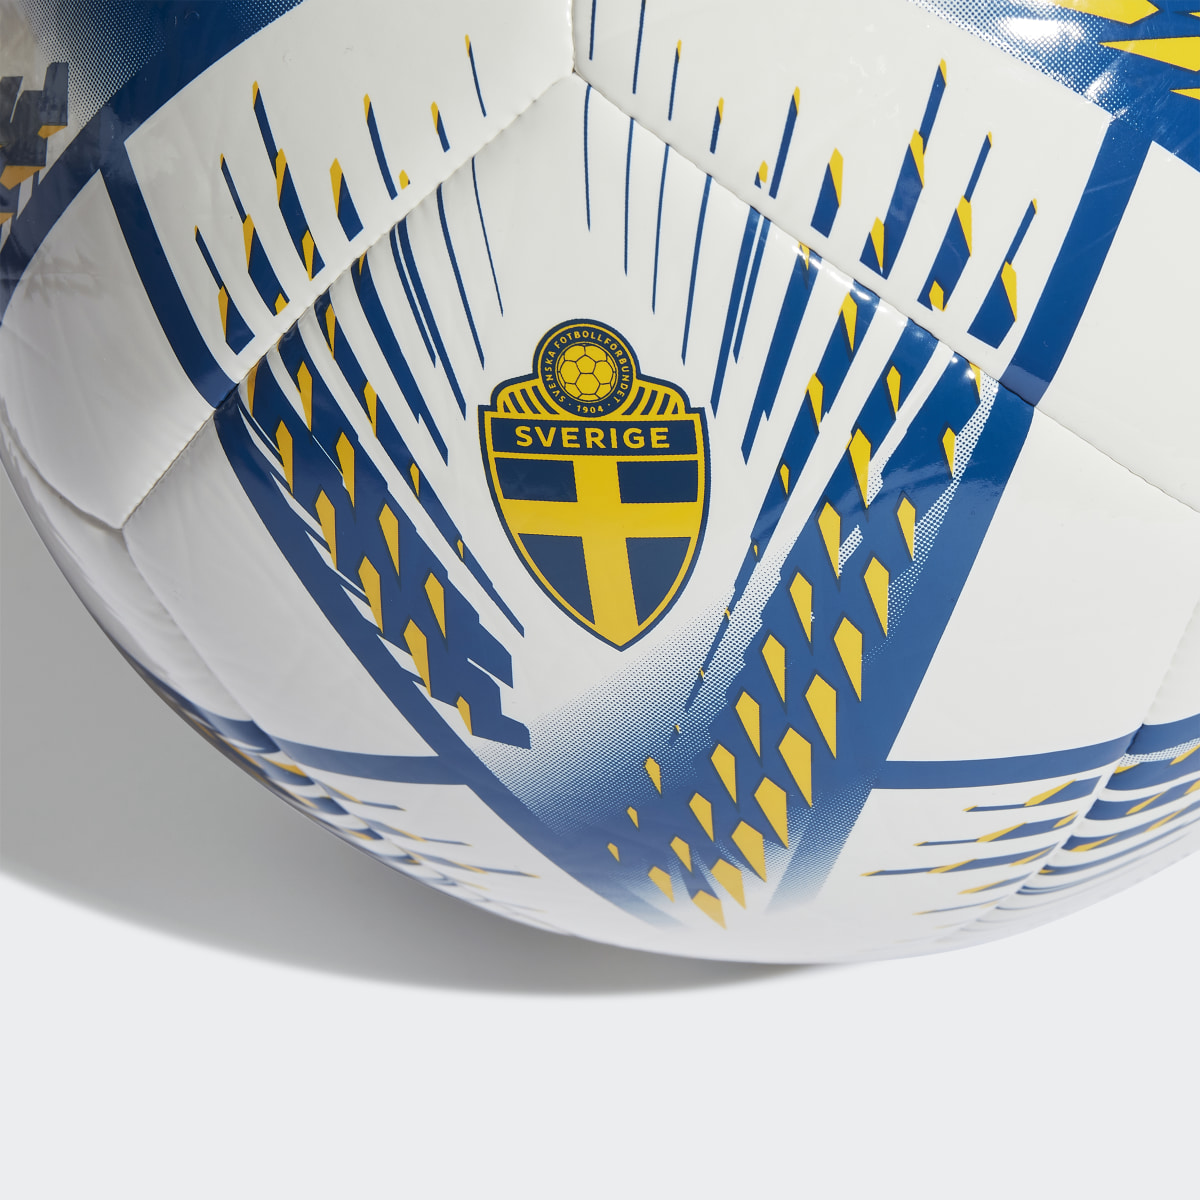 Adidas Al Rihla Sweden Club Football. 5